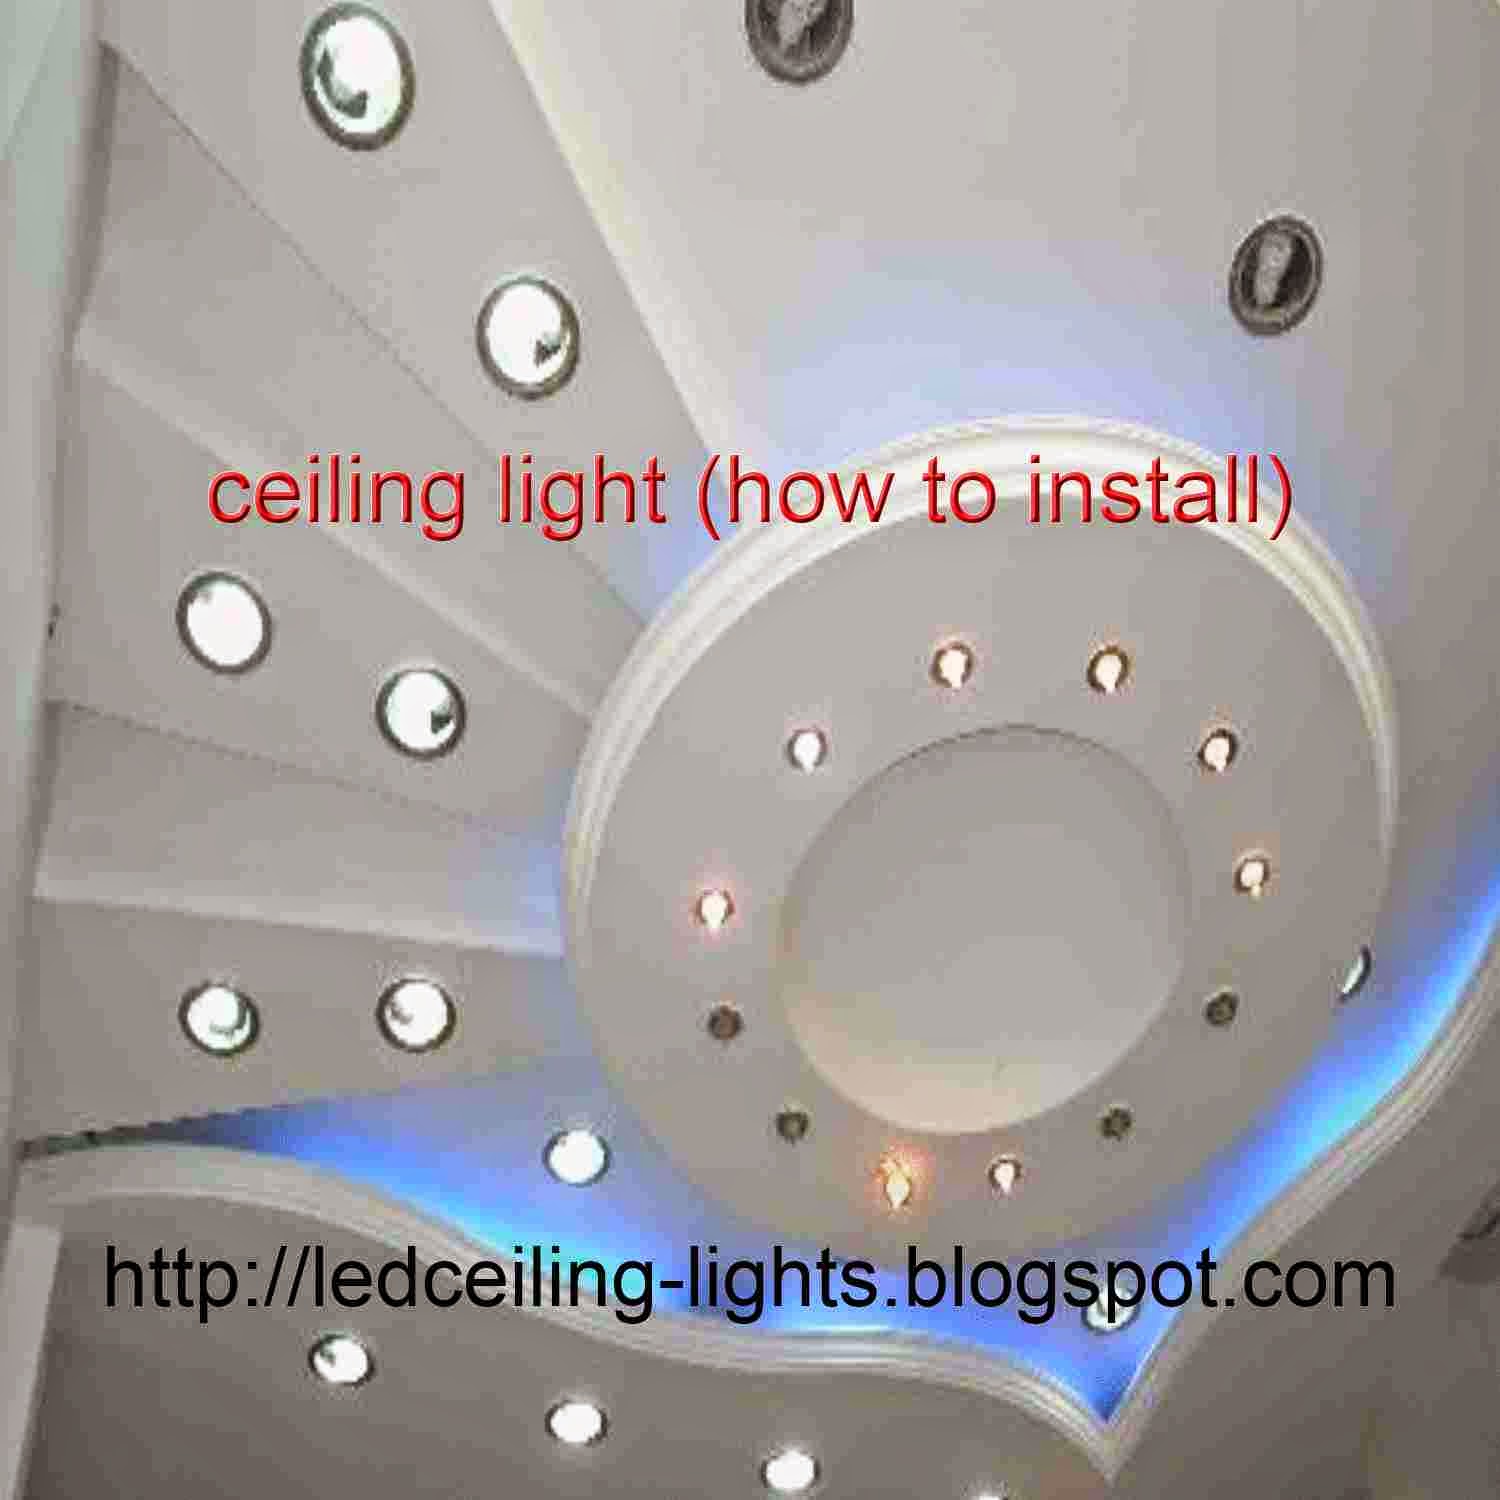 How to Install a Ceiling Light Fixture - Bob Vila